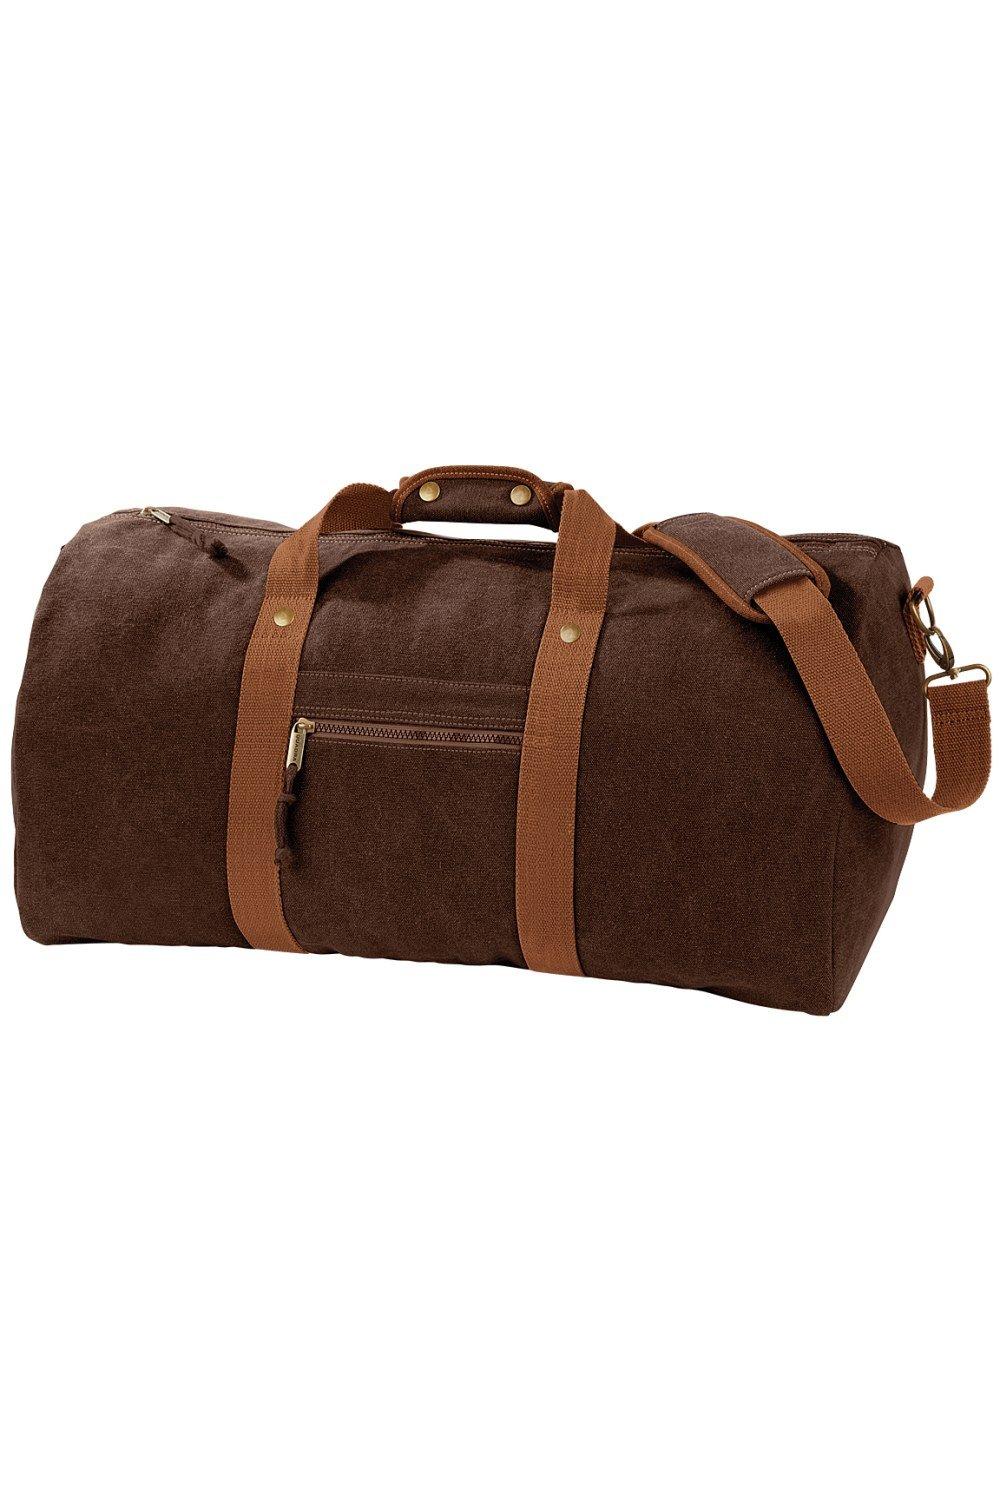 цена Винтажная холщовая дорожная сумка - 45 литров Quadra, коричневый